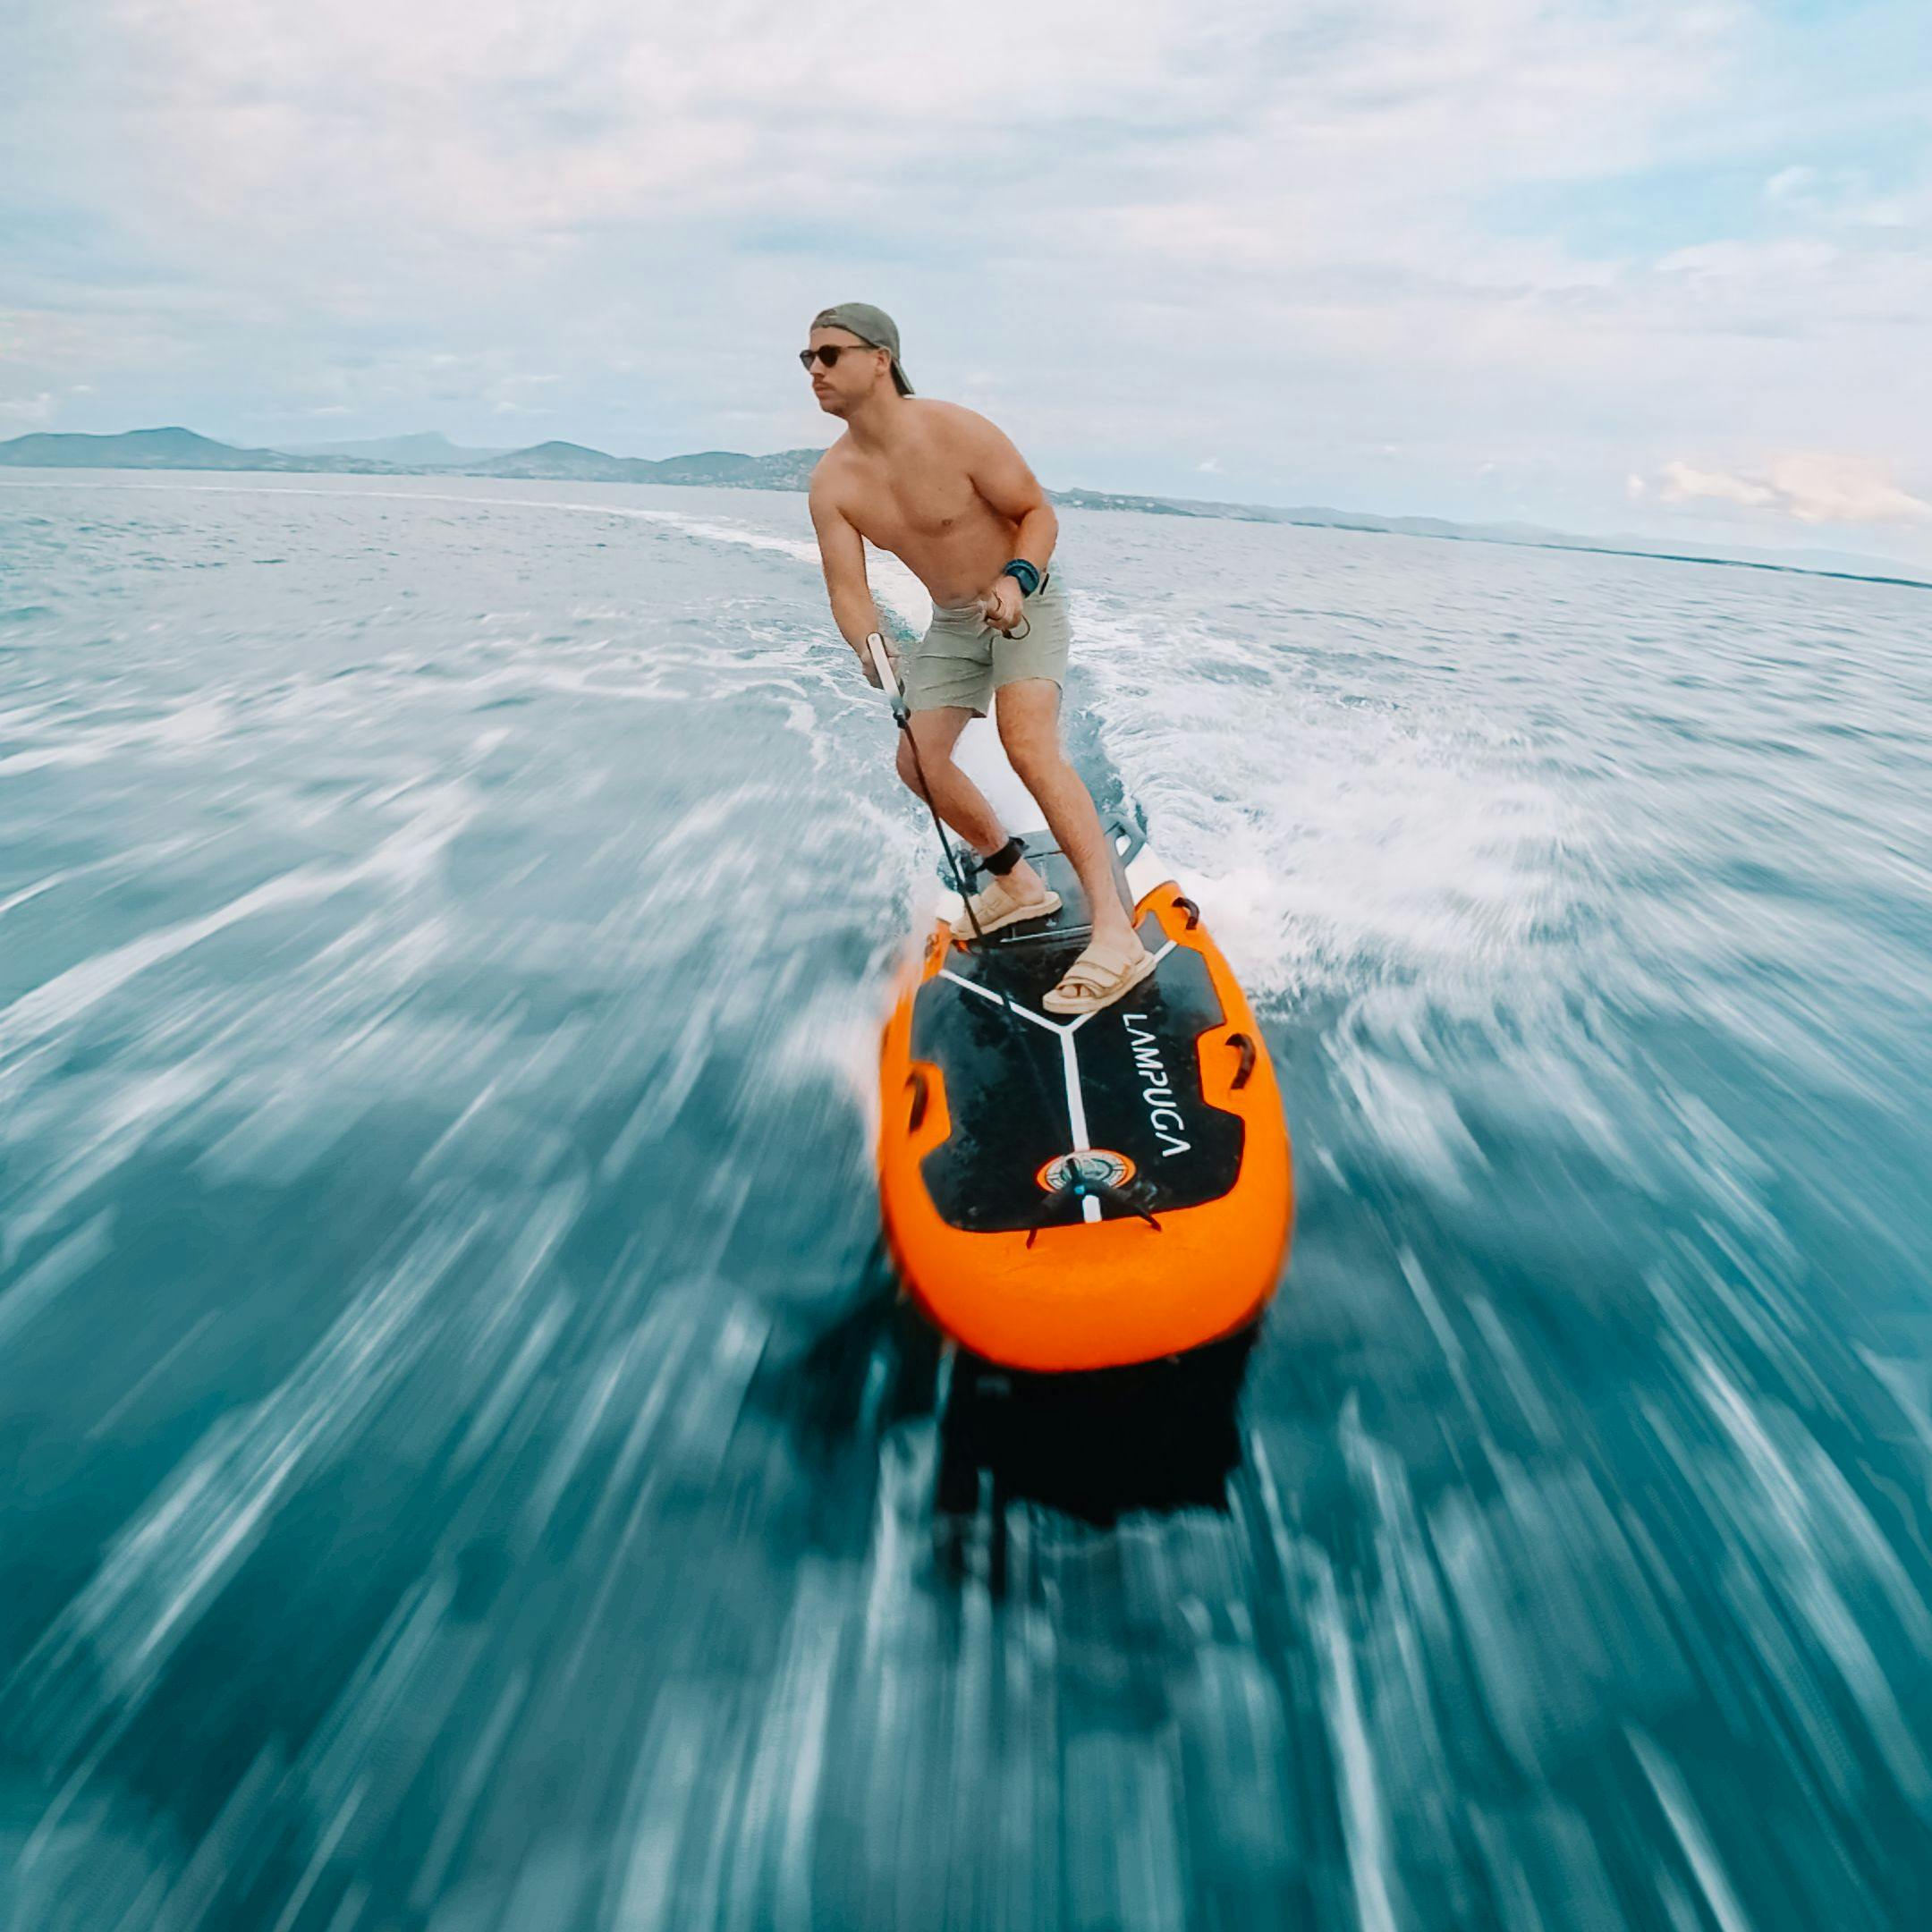 Mann auf einem Lampuga Jetboard, der auf dem Meer fährt